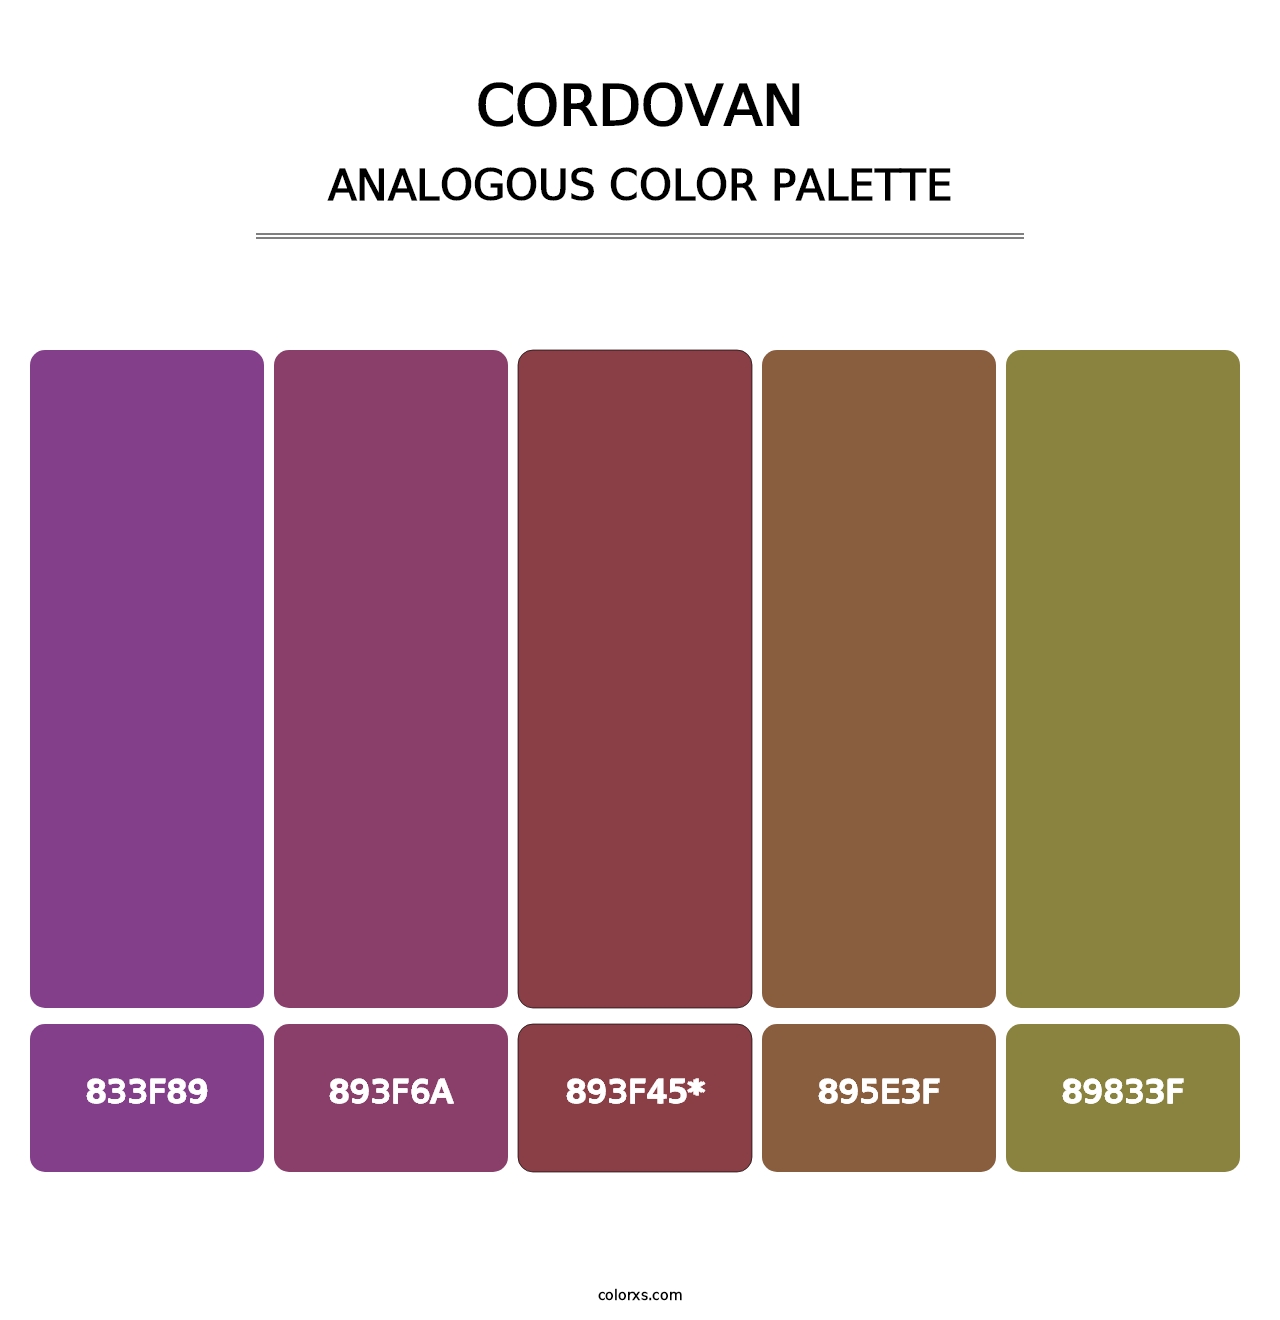 Cordovan - Analogous Color Palette